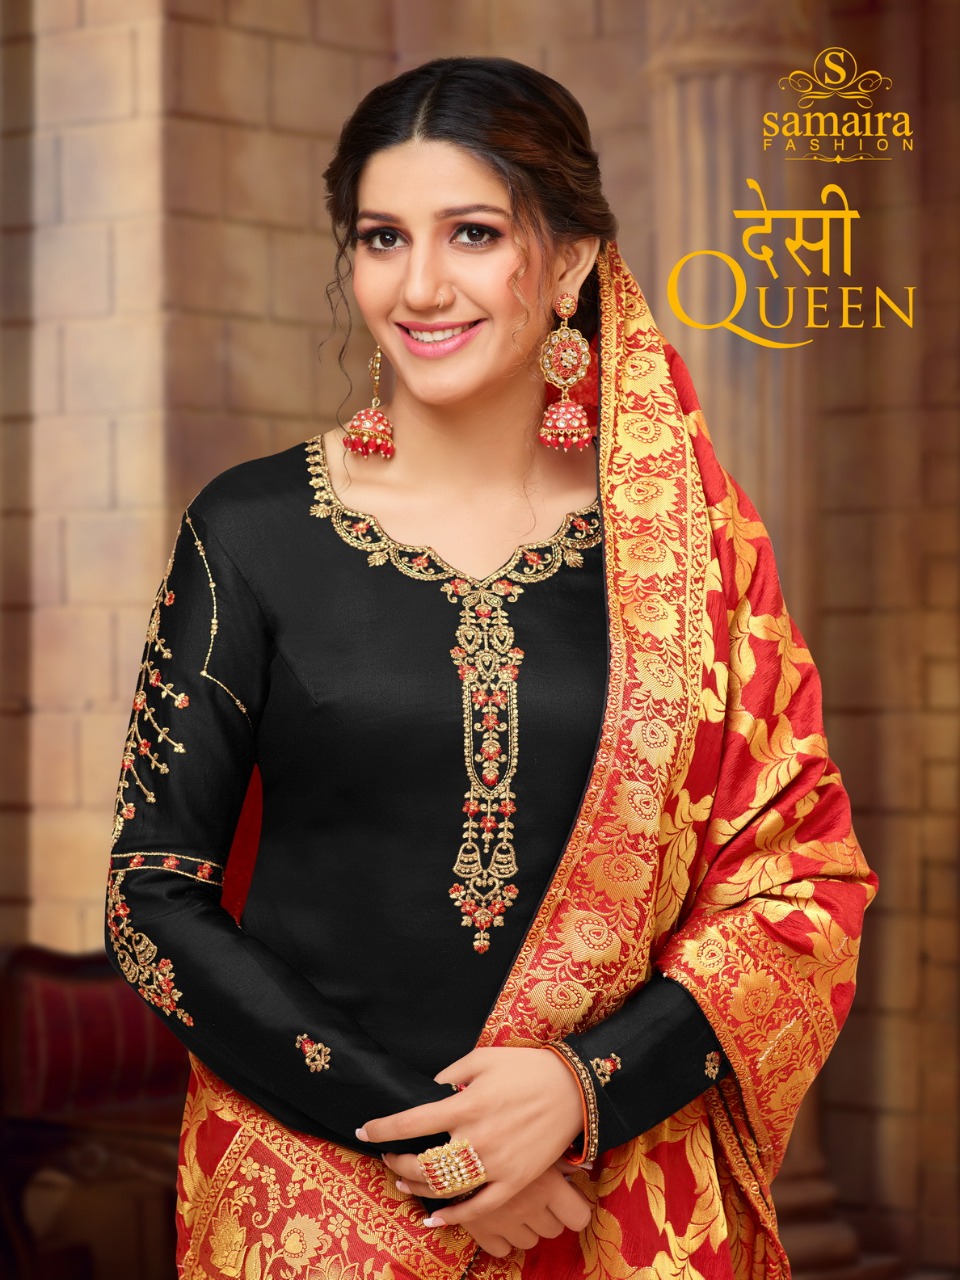 Samaira Fashion Desi Queen Pure Jam Silk With Work Salwar Ka...